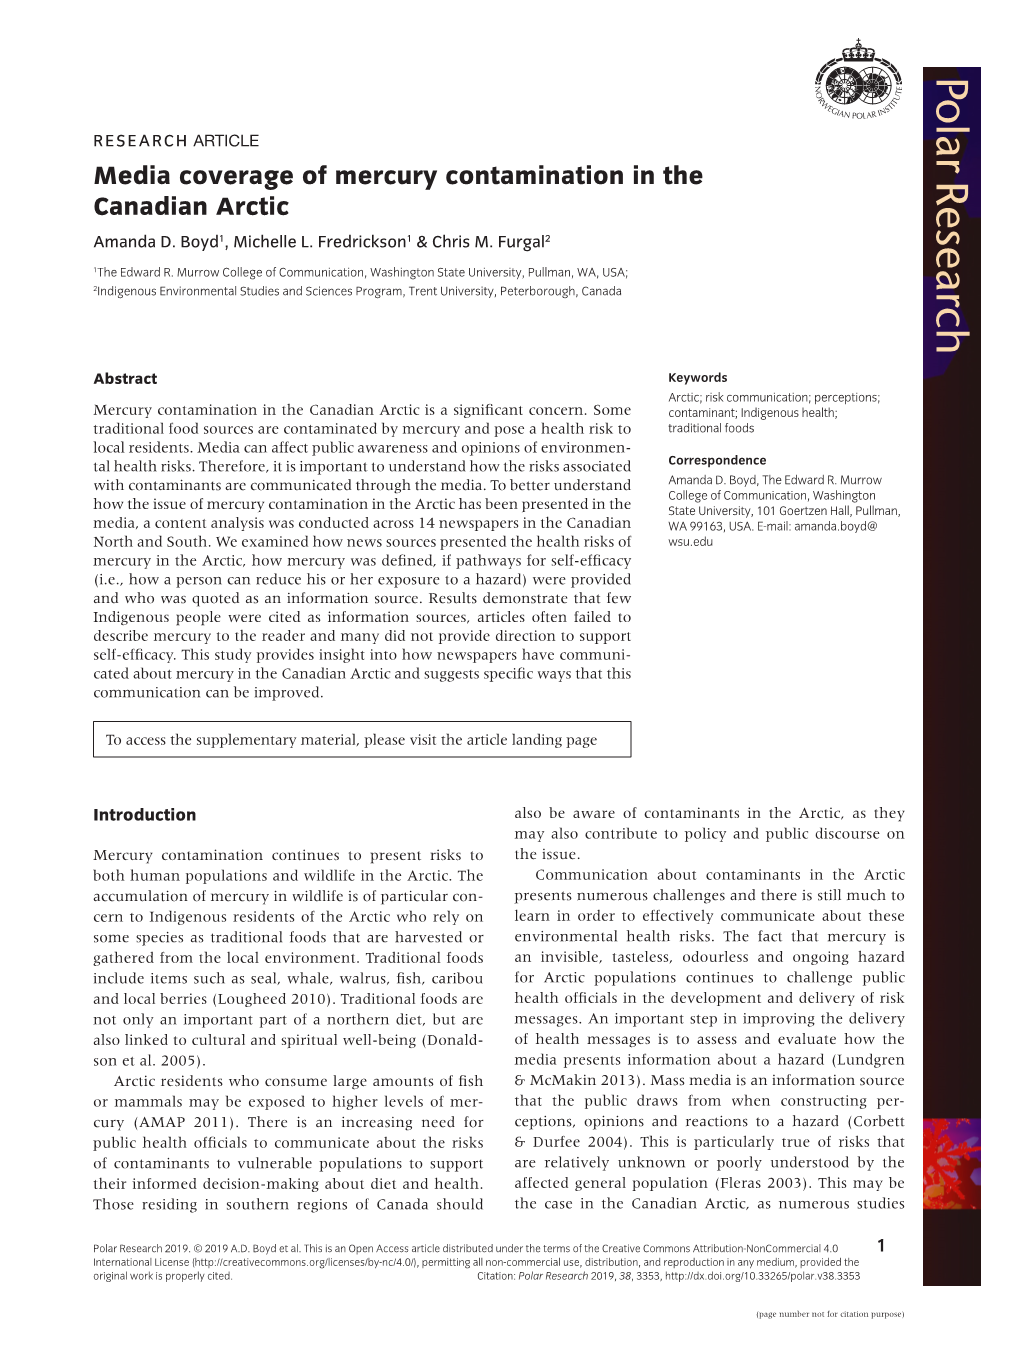 Media Coverage of Mercury Contamination in the Canadian Arctic Amanda D